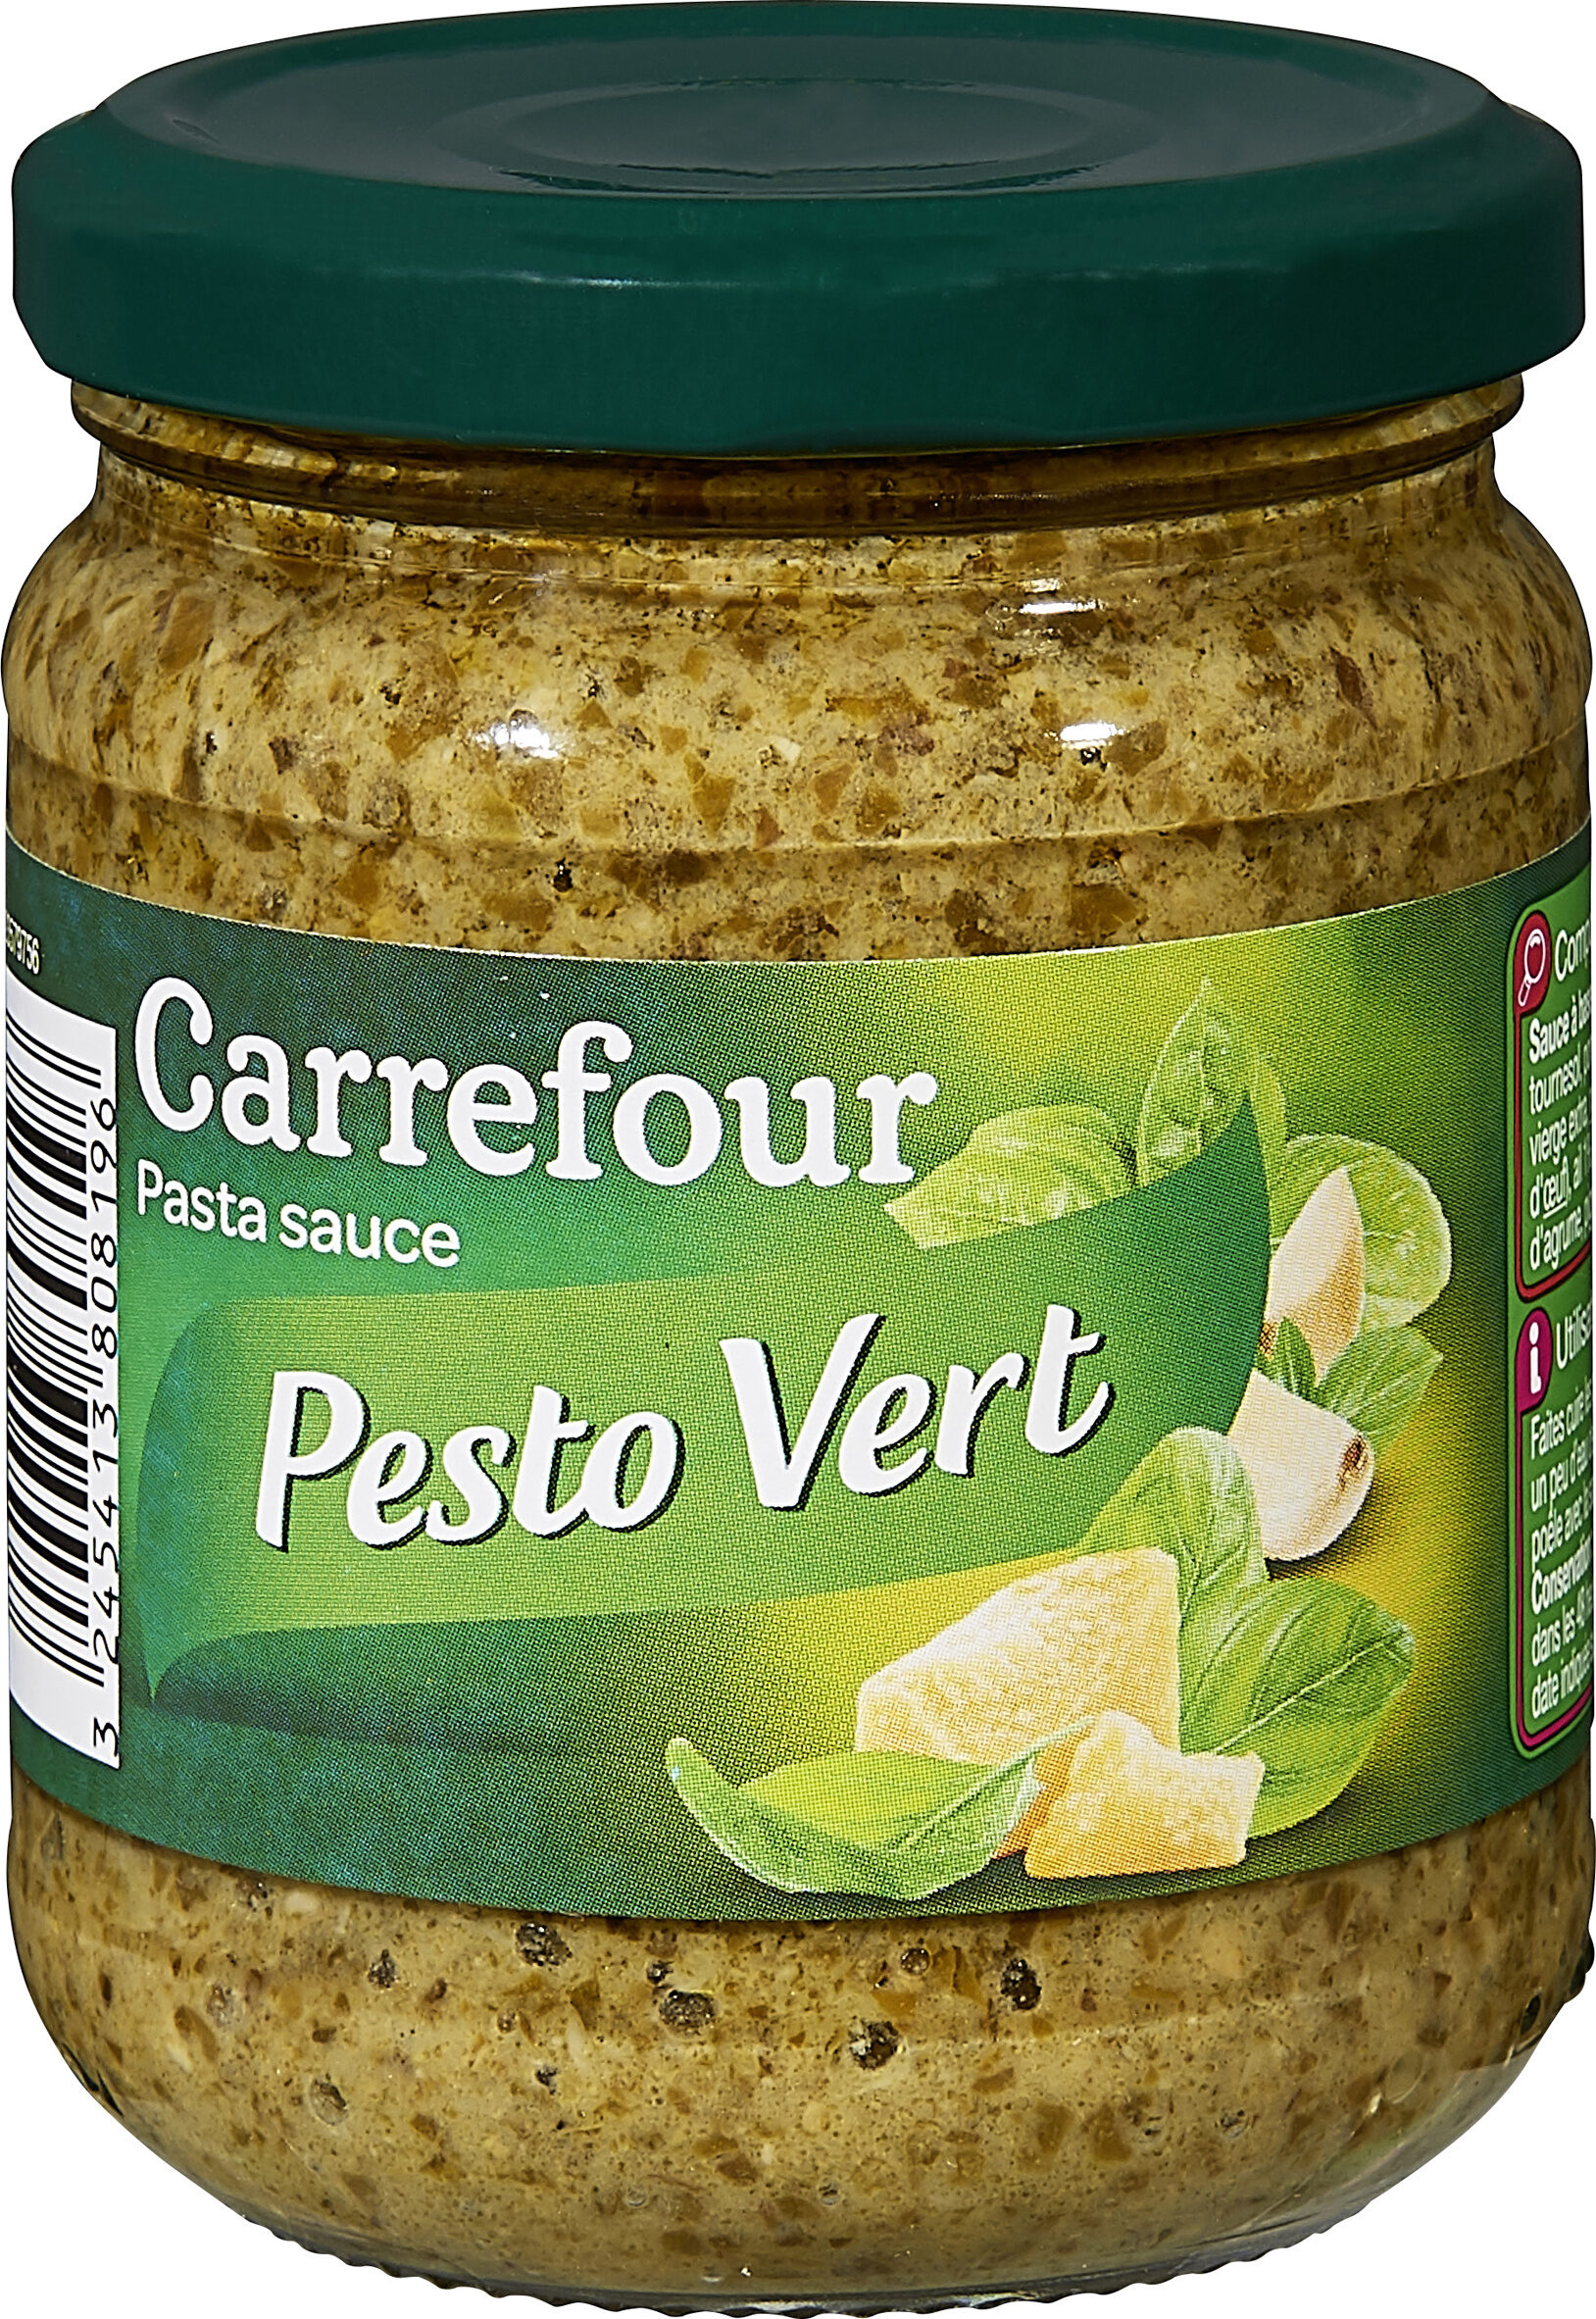 Pesto vert - Product - en